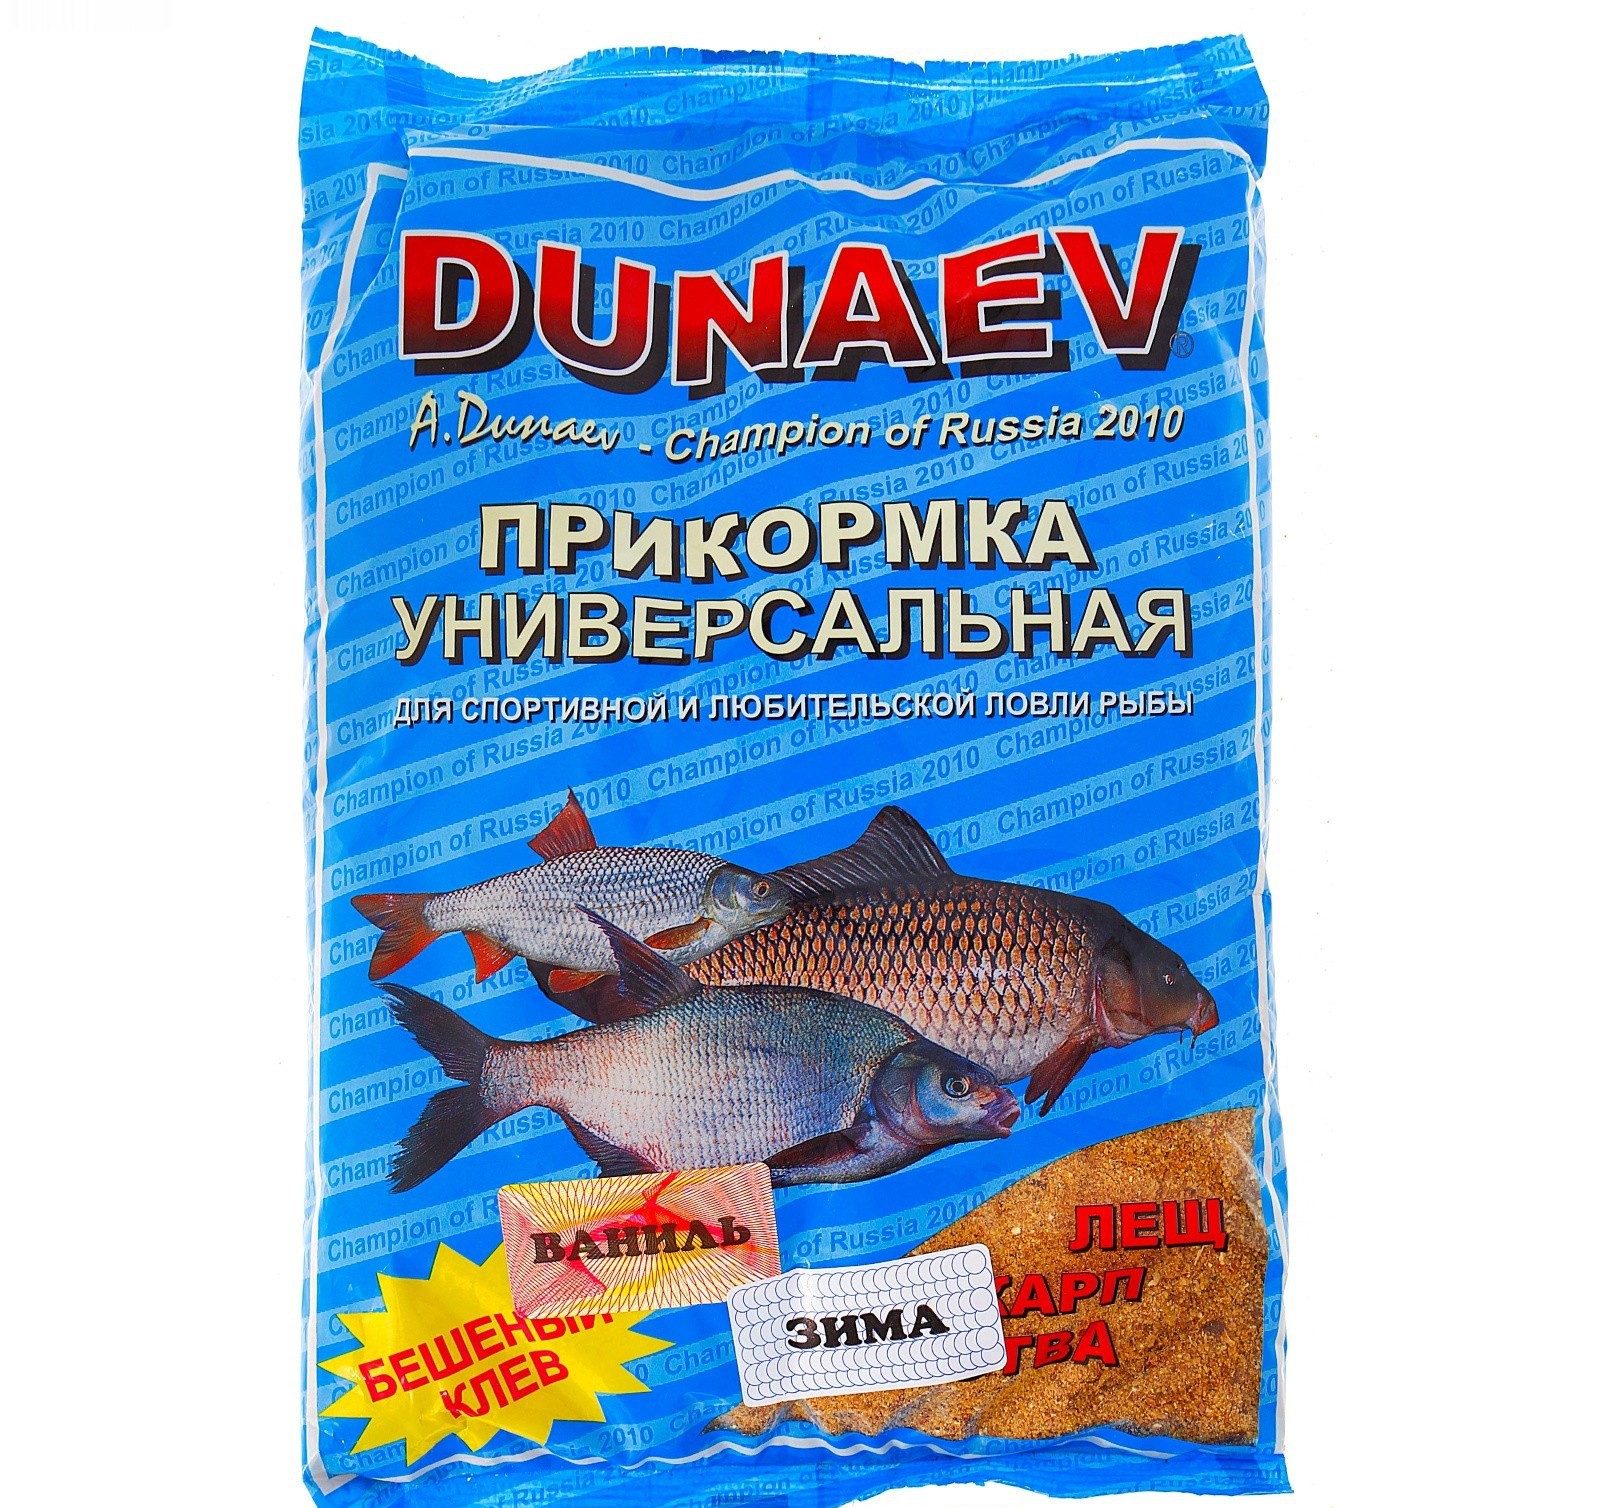 Прикормка для ранней весны. Прикормка Дунаев универсальная лещ. Прикорм для рыбы. Прикормка для форели. Приманка для рыбы Дунаев.